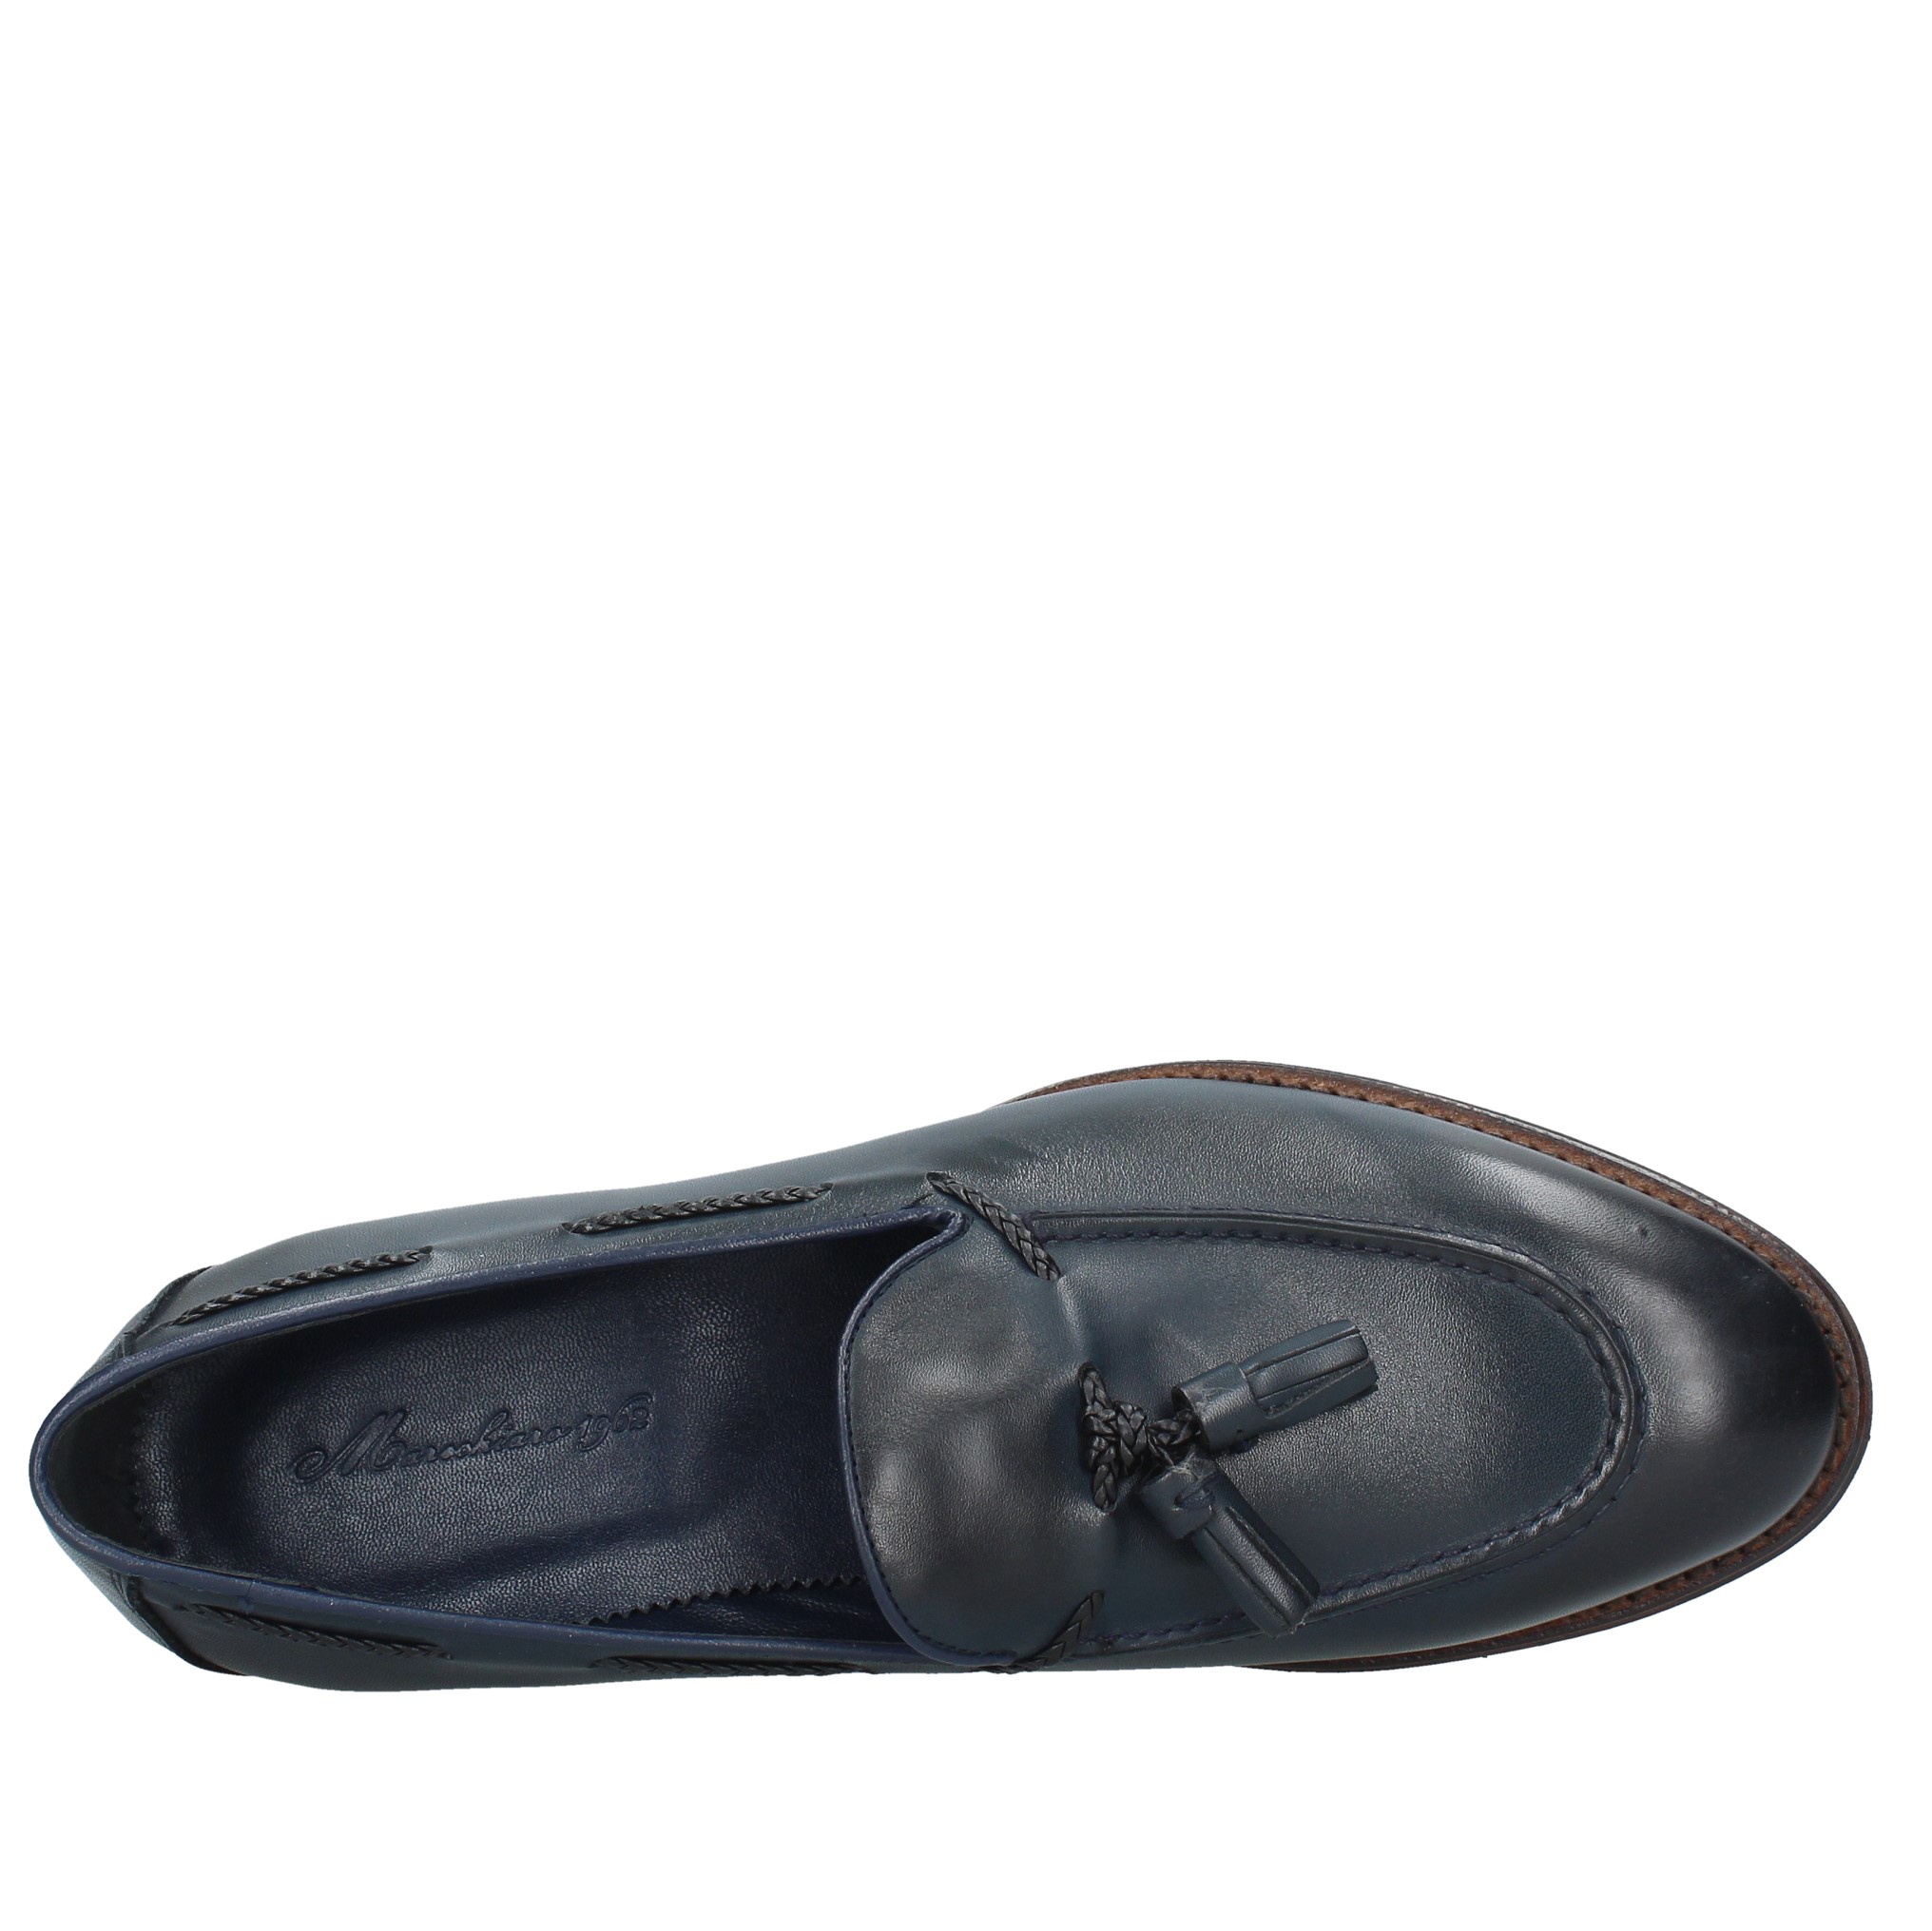 mocassini marechiaro - MARECHIARO 1962 - Ginevra calzature